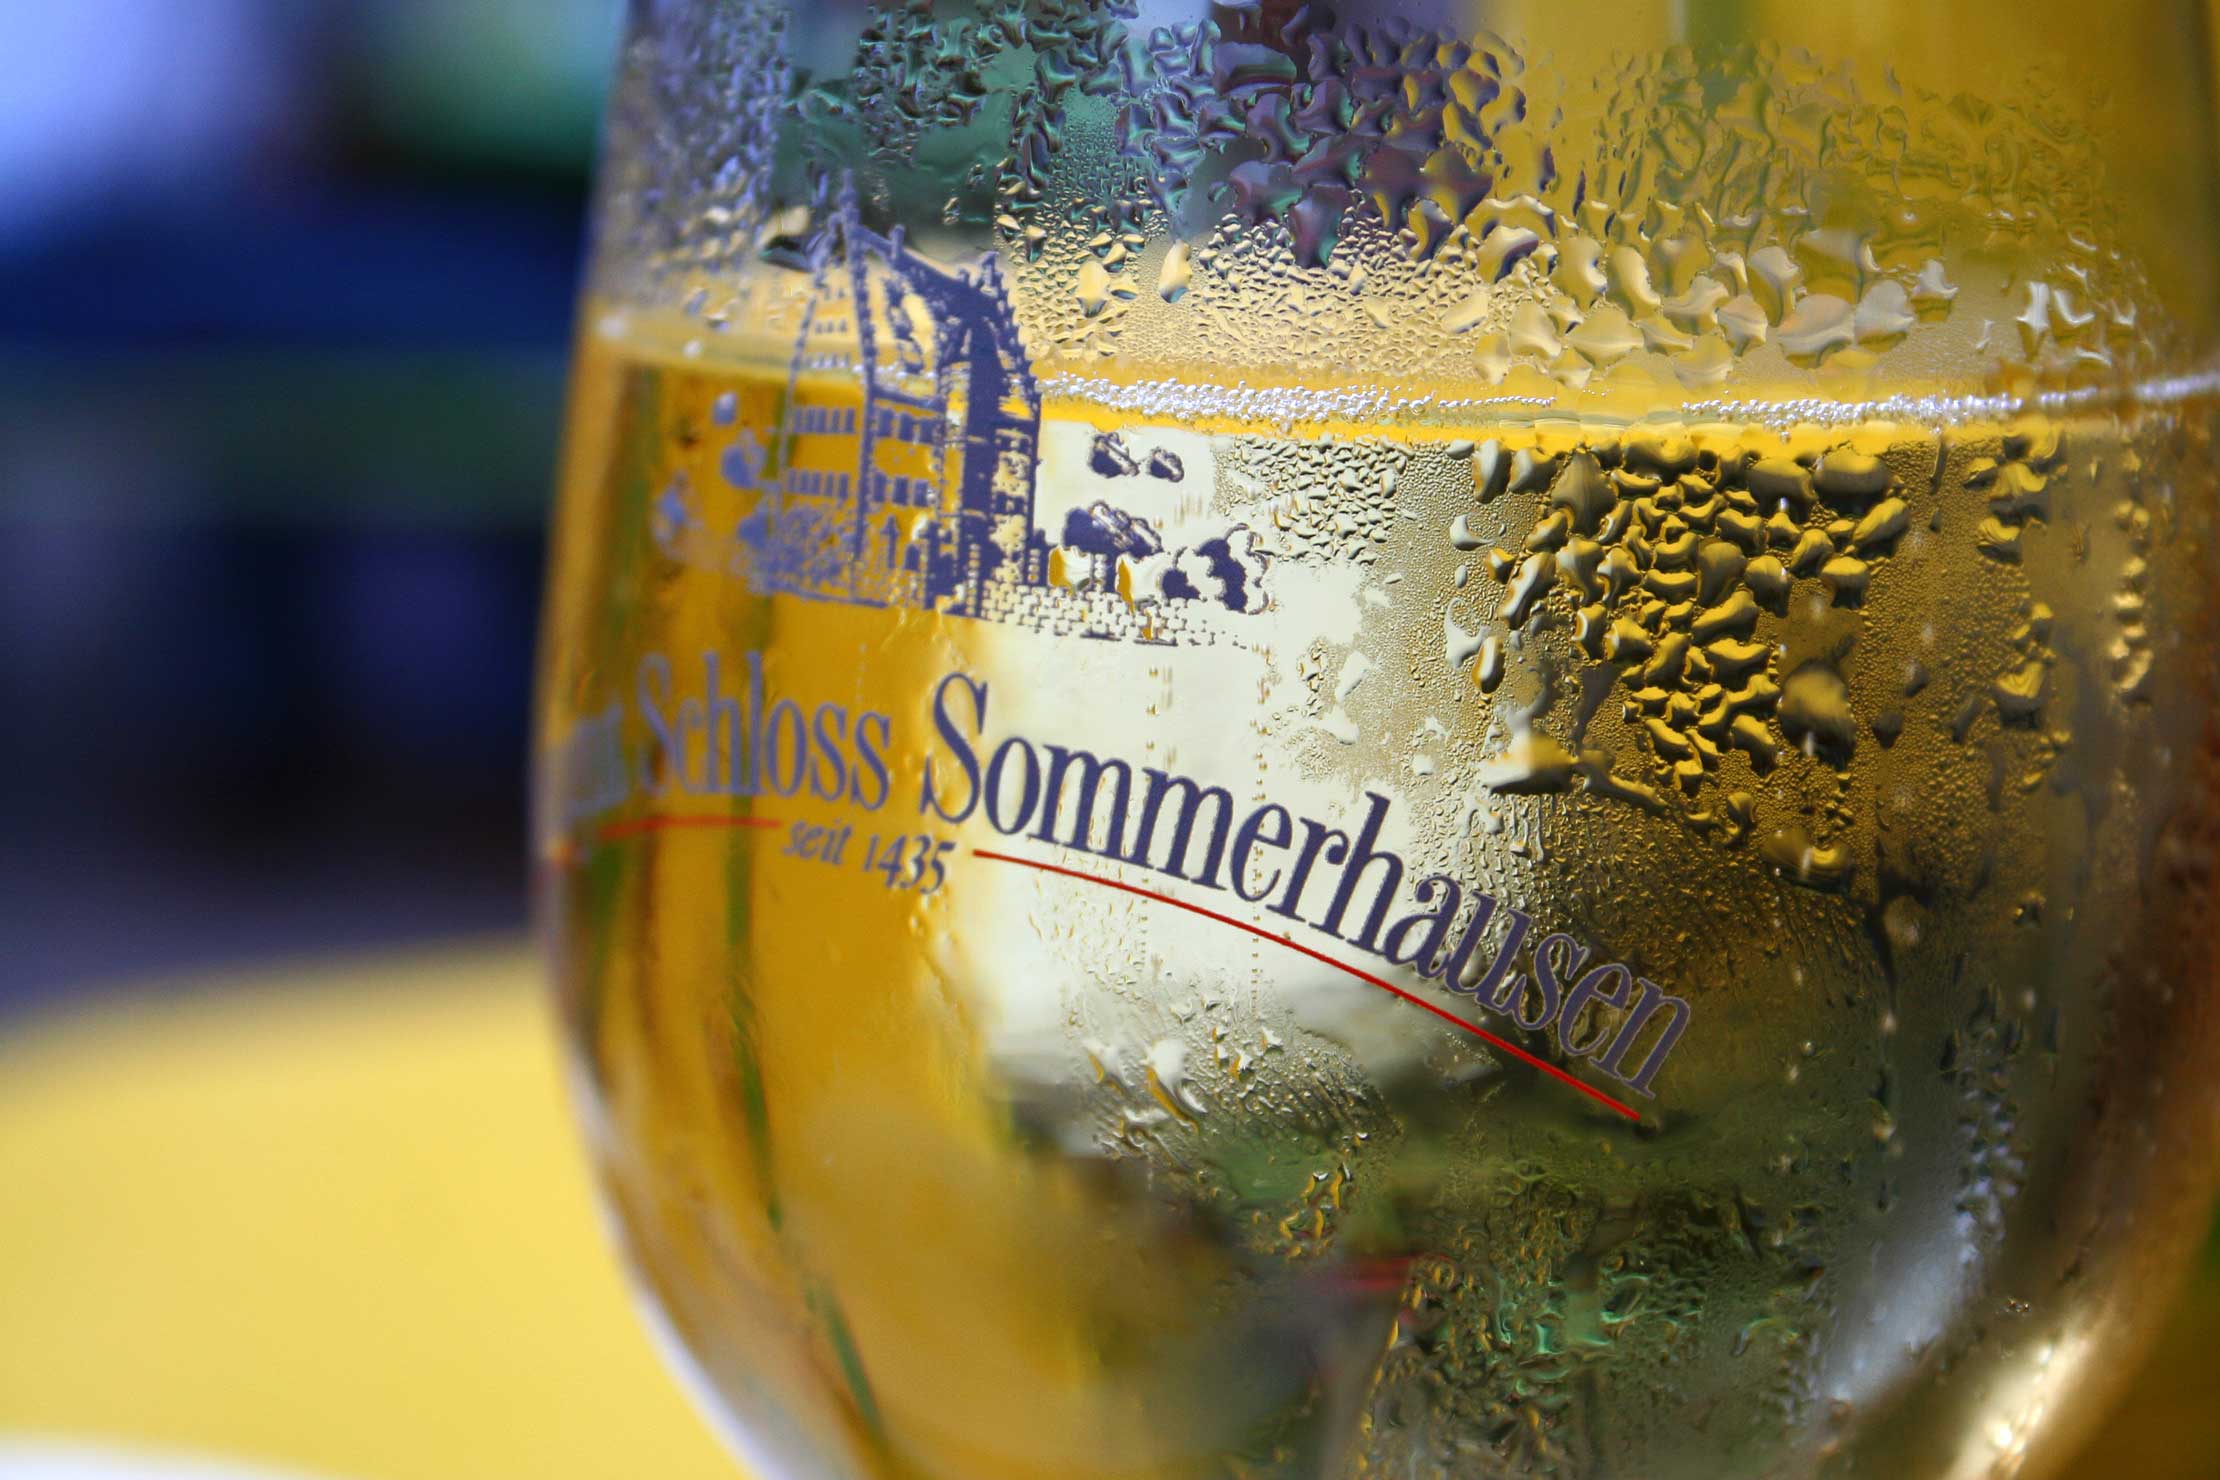 Weinglas mit Logo "Weingut Schloss Sommerhausen"